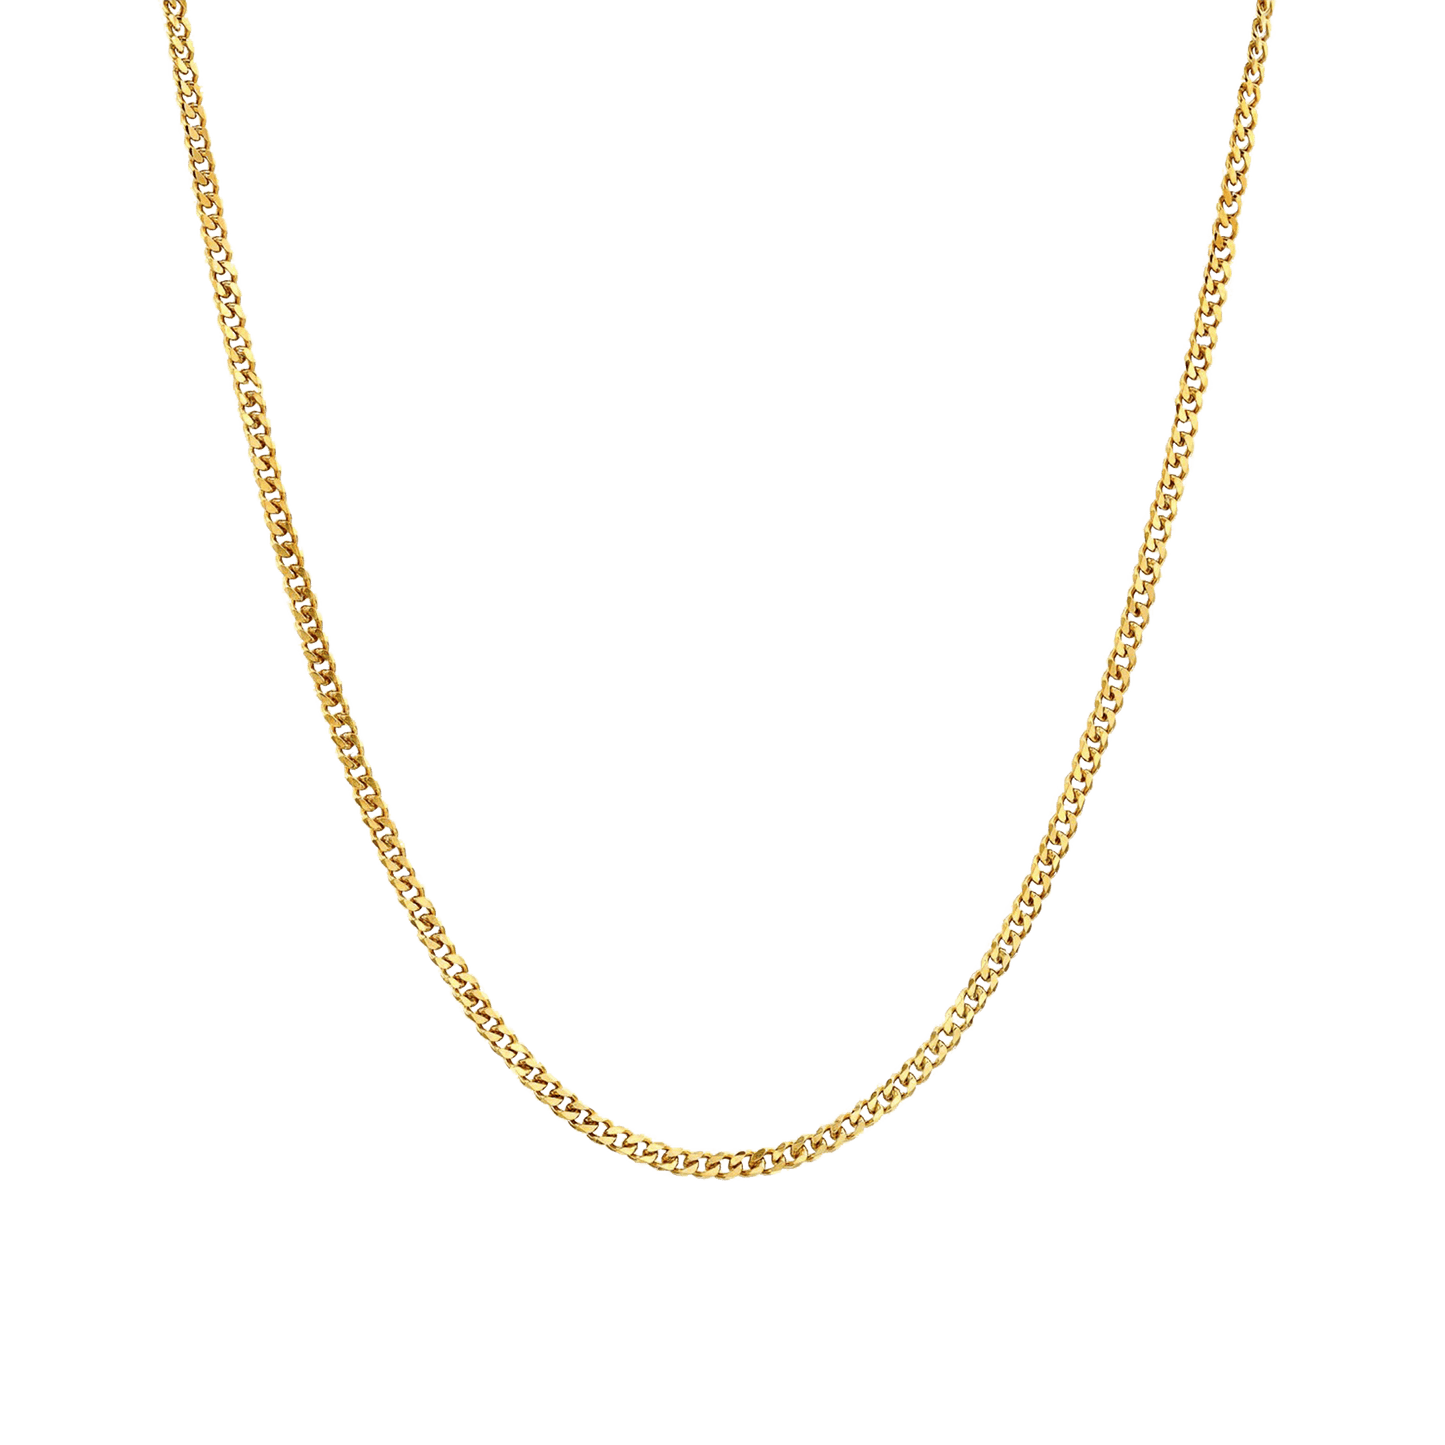 Double Curb Chain - 18K Gold Vermeil Chains magal-dev 